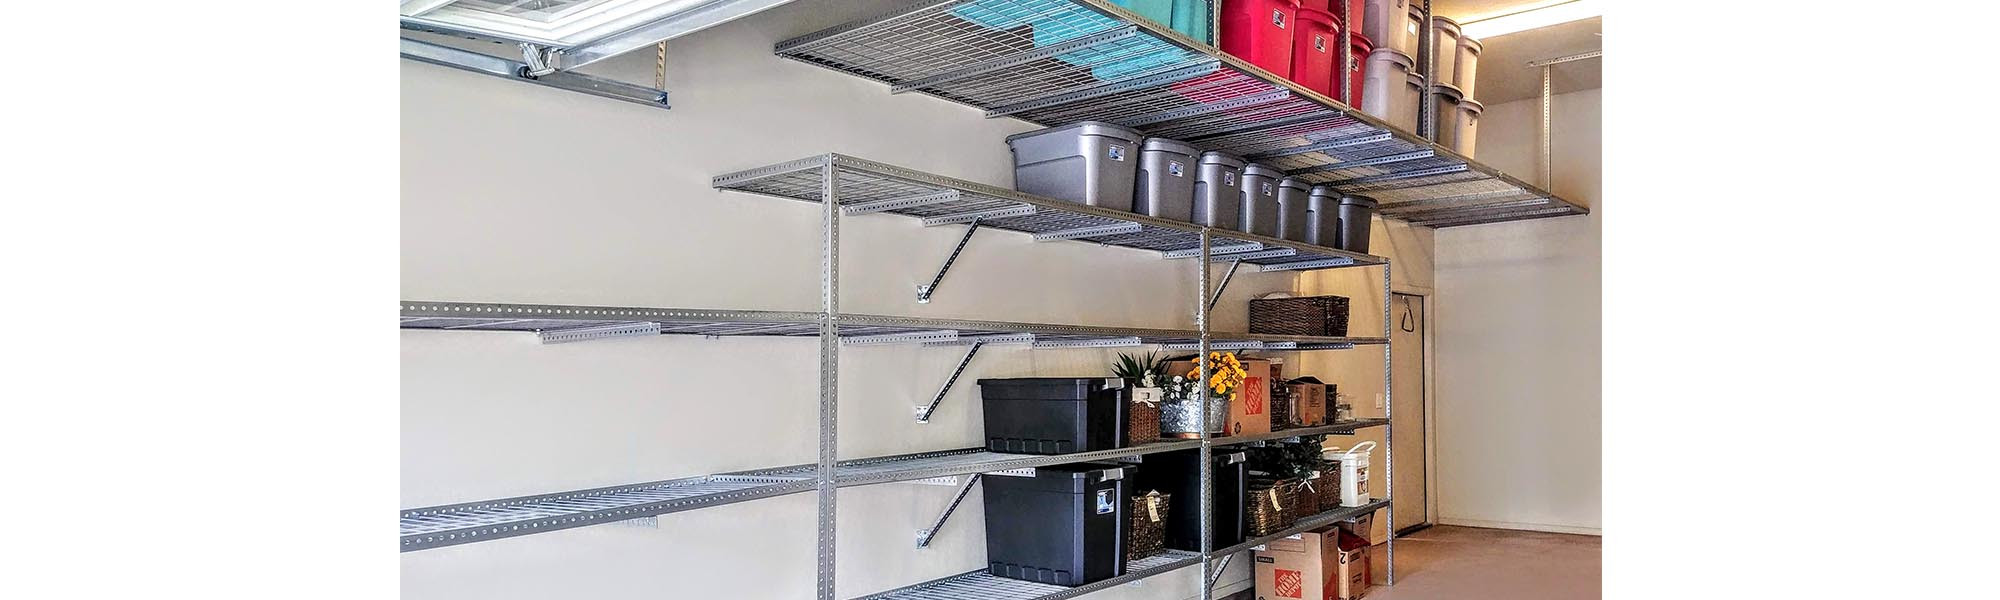 Garage Organization Service
 Overhead Garage Storage & Shelves in Phoenix AZ